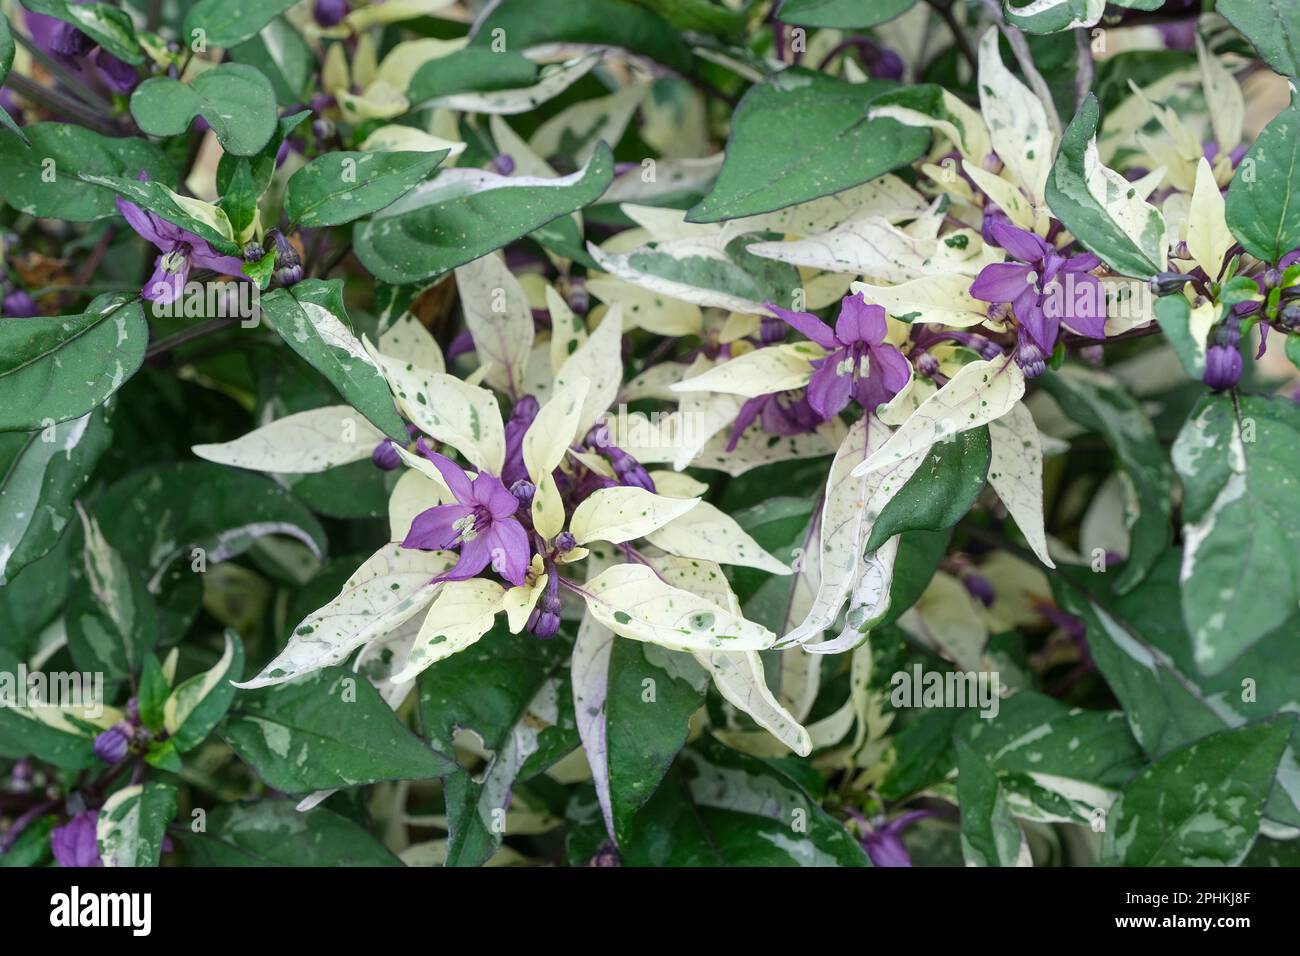 Peperone ornamentale Calico, Capsicum annuum Calico, foglie variegate di verde, viola e crema, frutti viola che maturano rossi Foto Stock